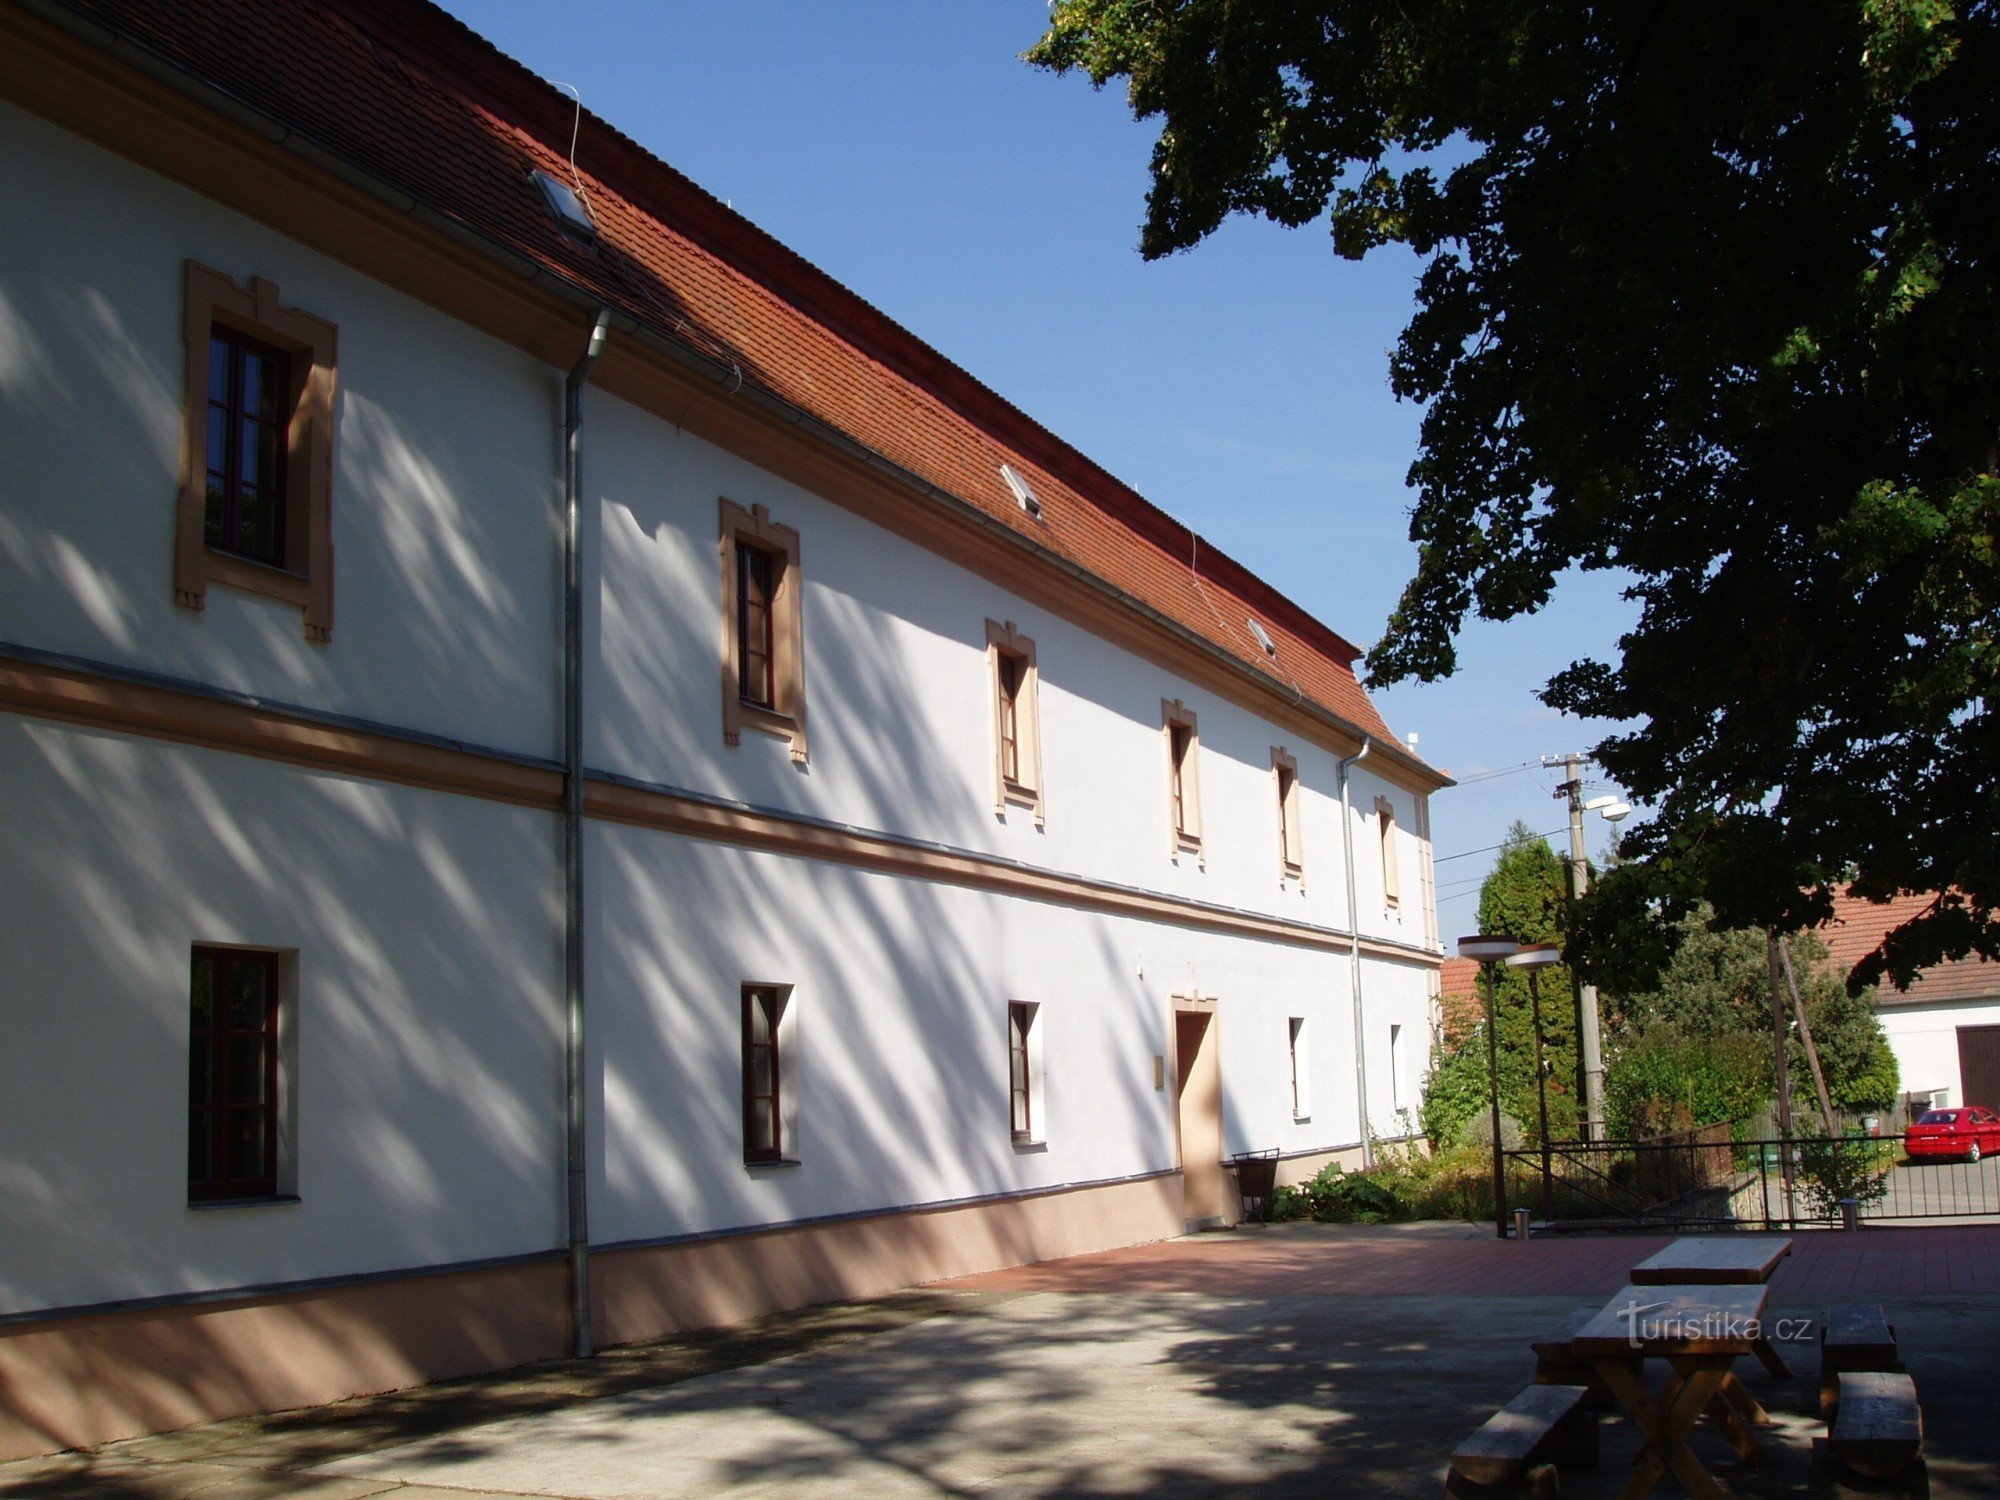 Casa de educação ecológica Krásensko